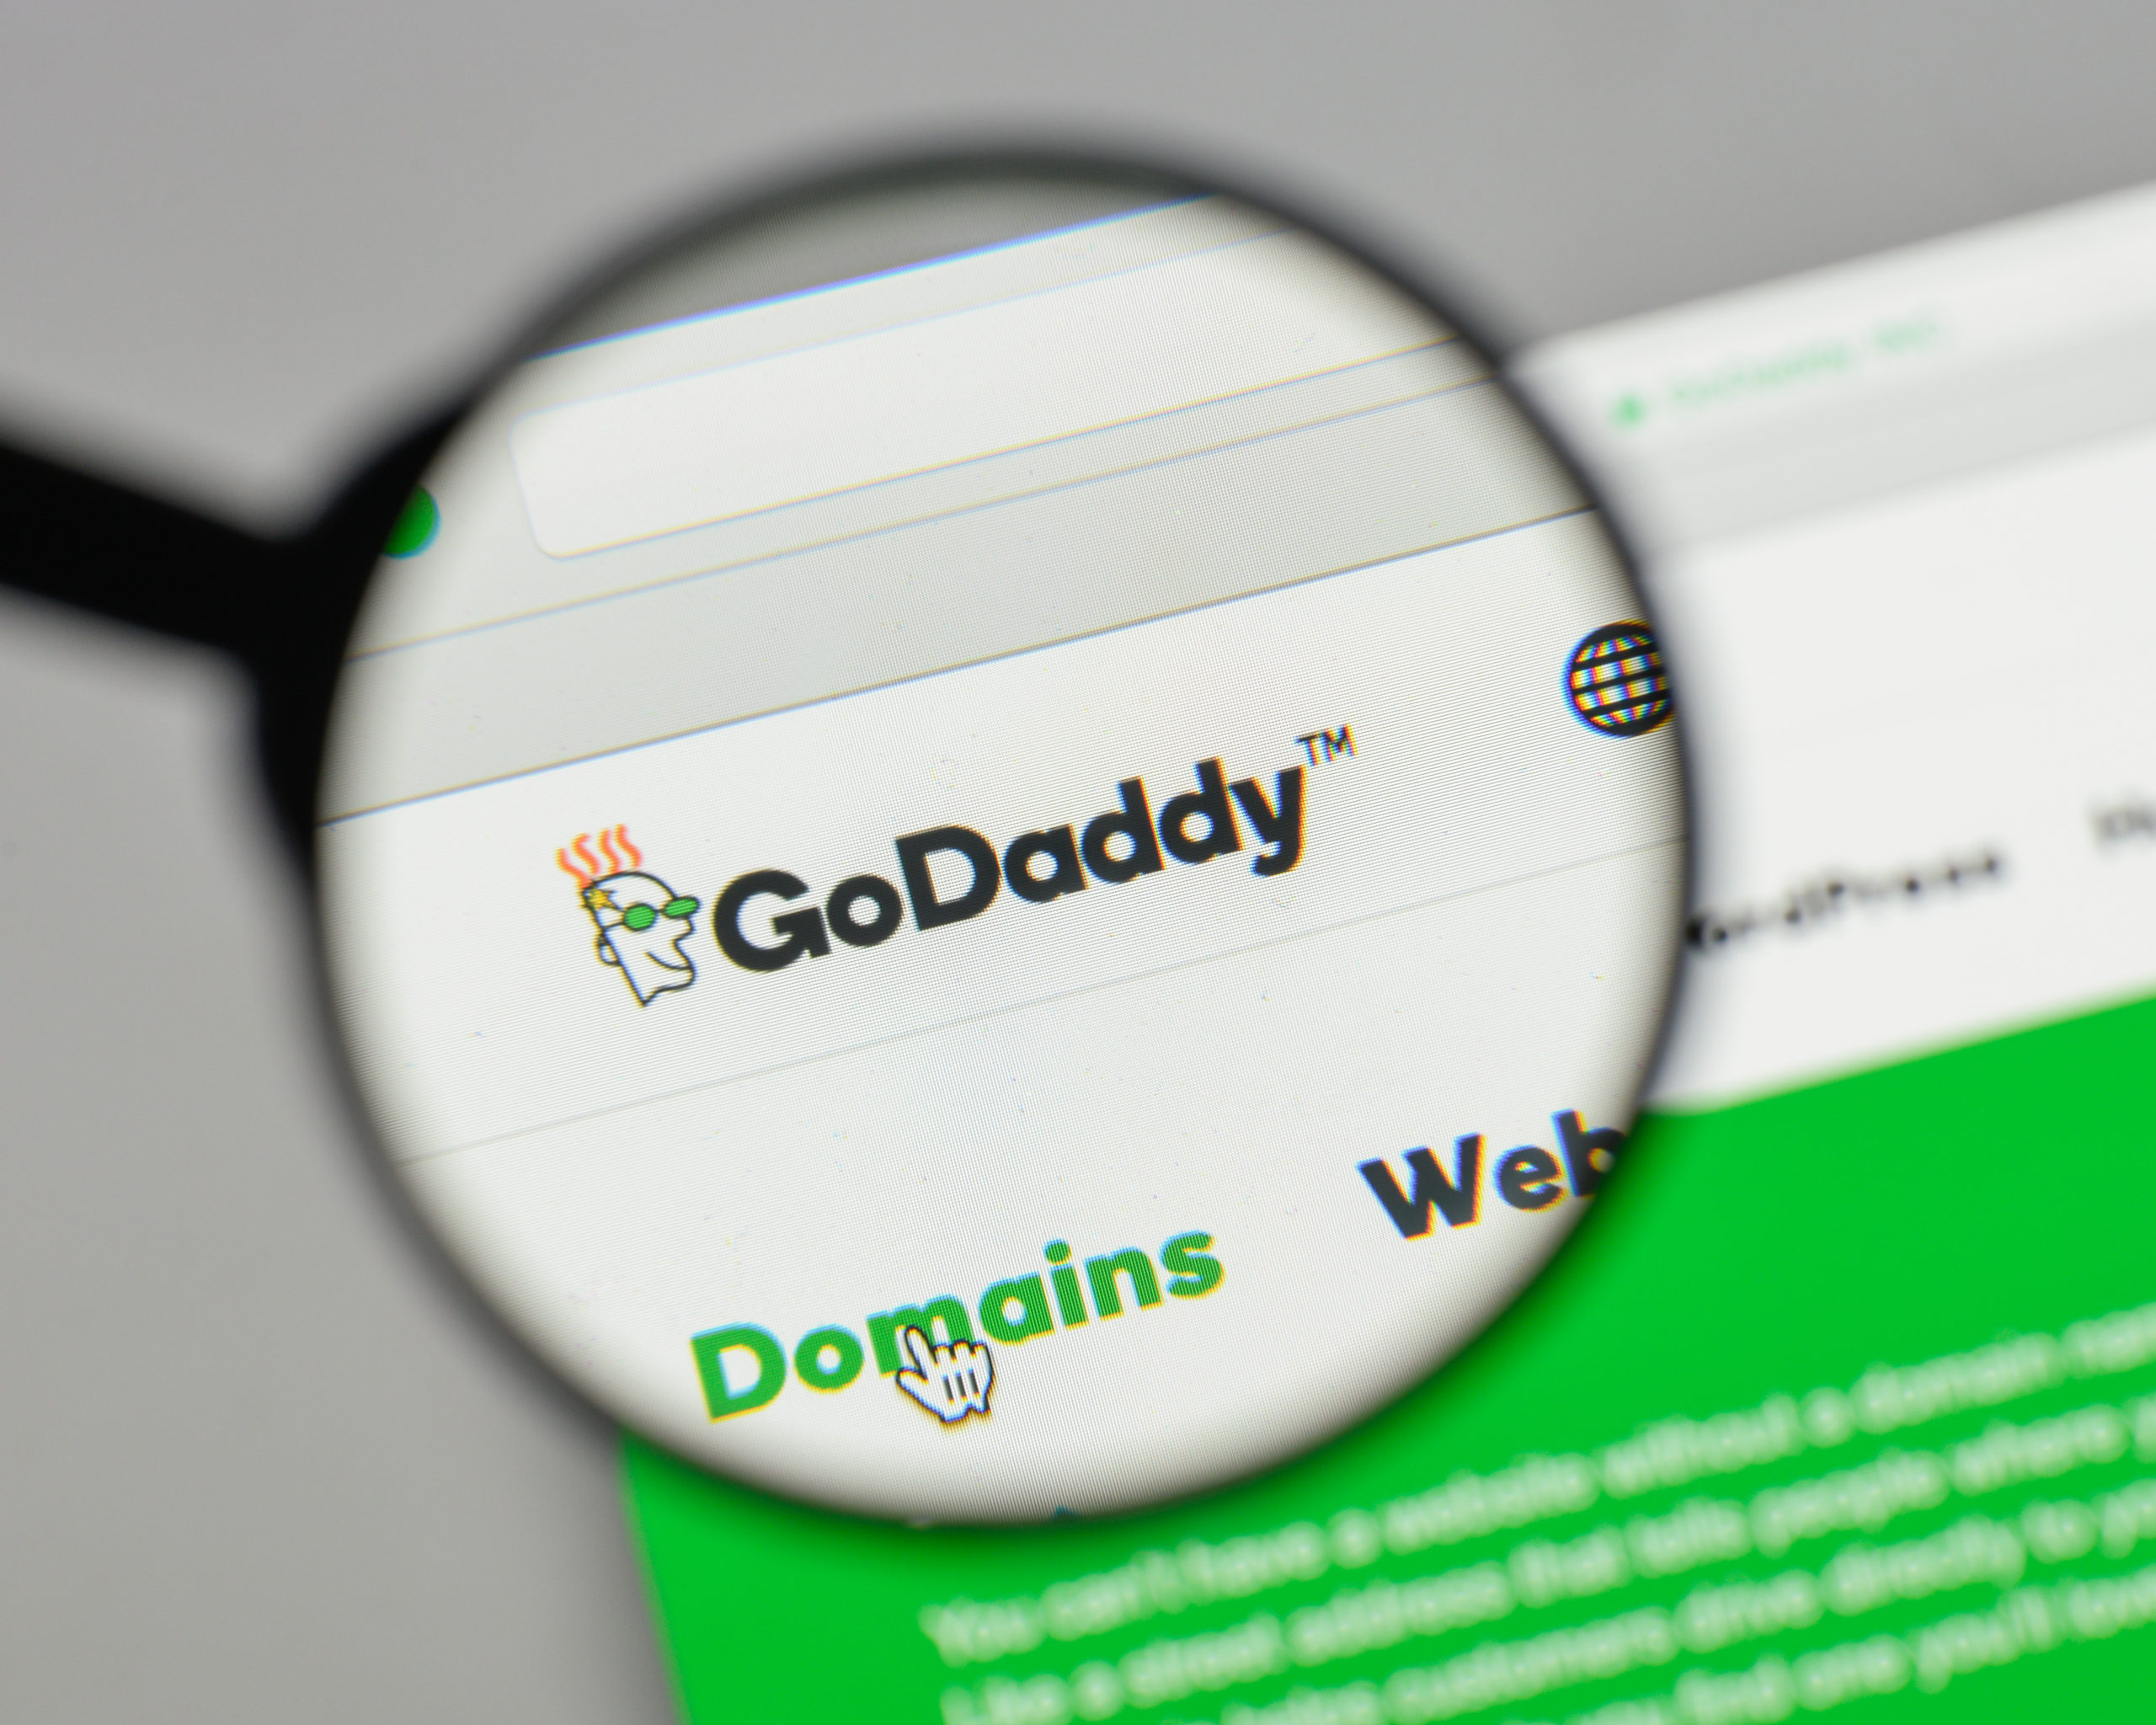 How to Install WordPress on GoDaddy Domain